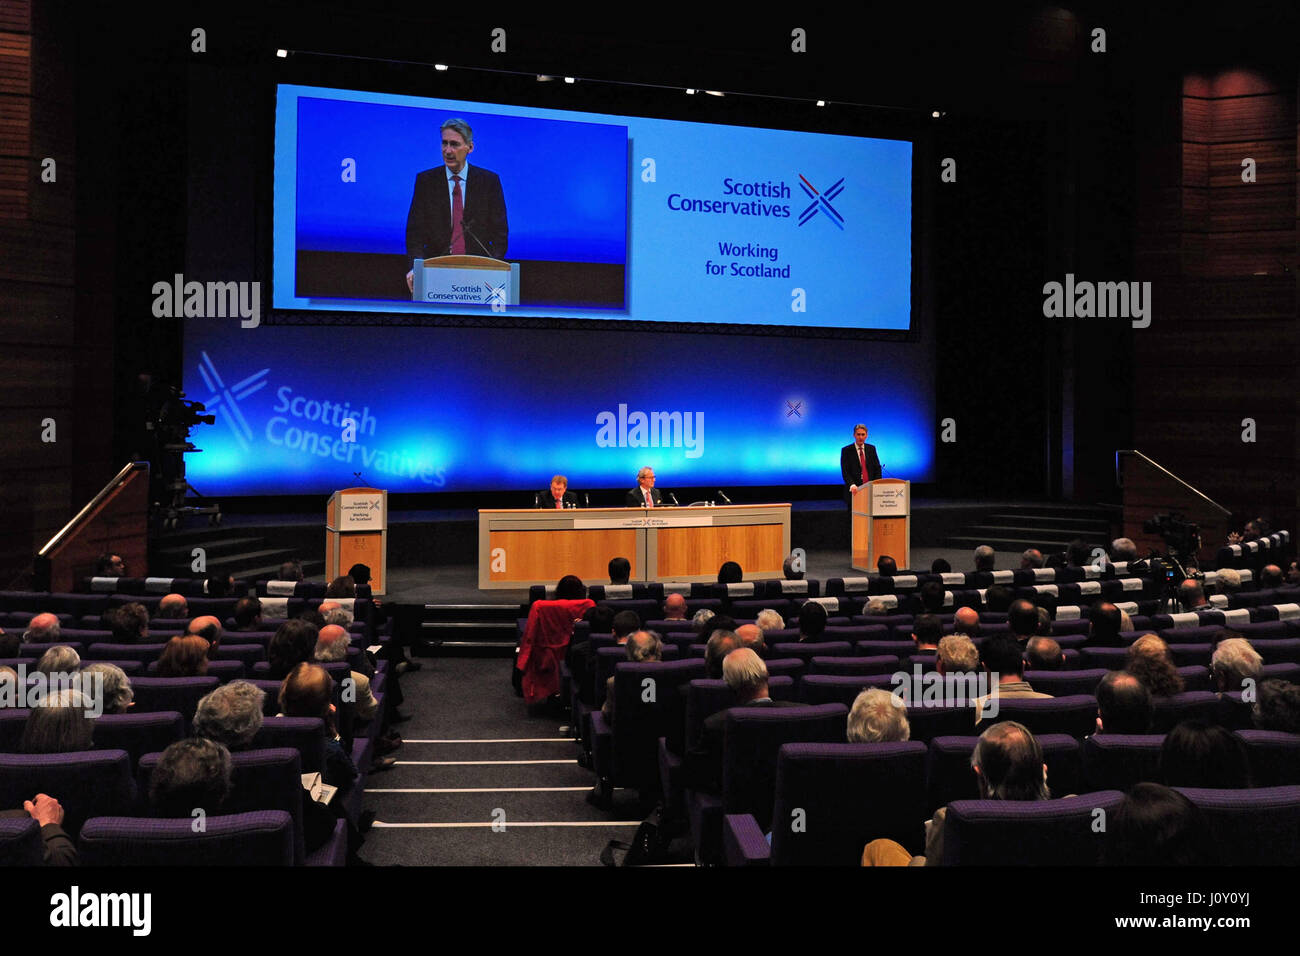 Le Secrétaire à la défense, Philip Hammond traite de la conférence du parti conservateur écossais à Édimbourg Banque D'Images